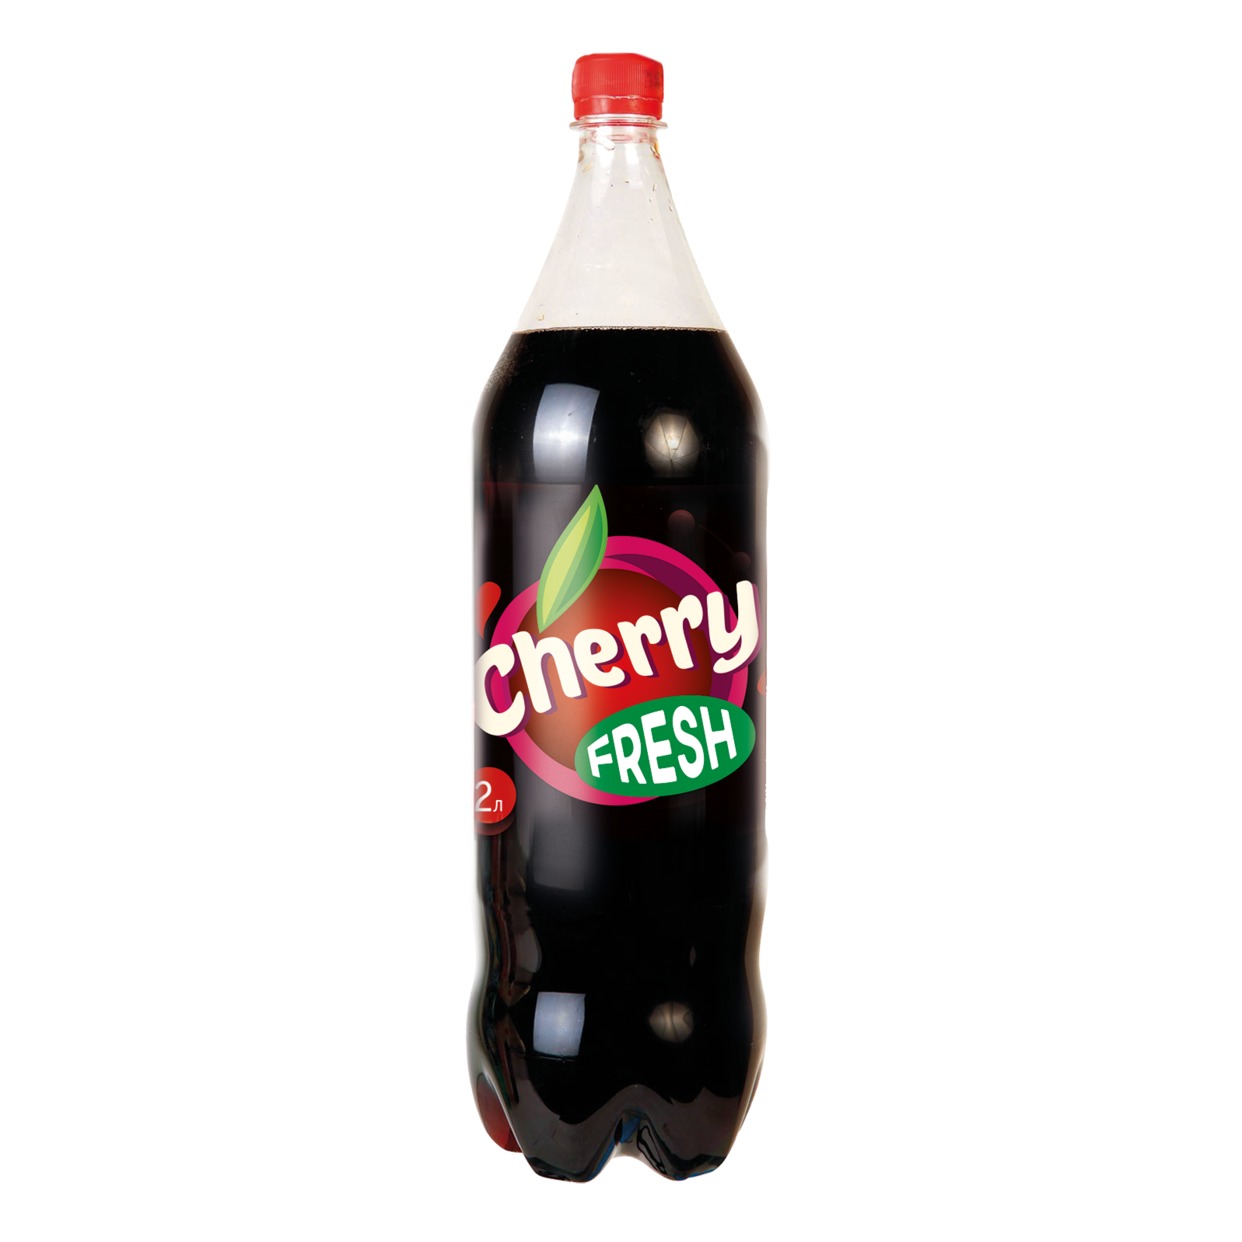 Напиток Fresh Cherry, сильногазированный, 2 л по акции в Пятерочке